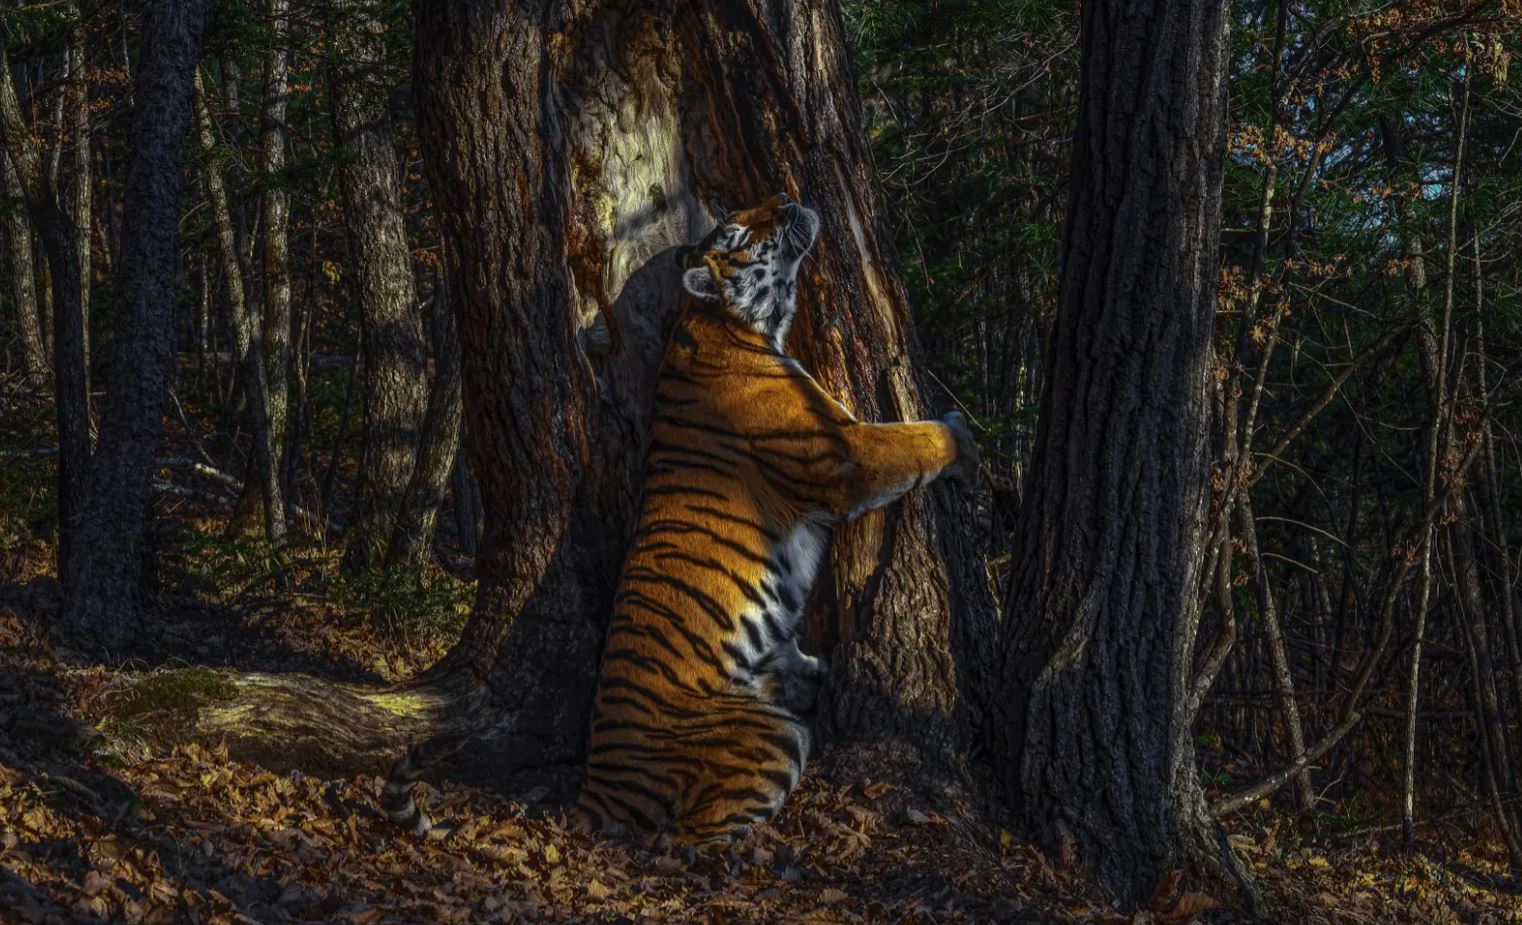 Bộ sưu tập ảnh thiên nhiên của năm: Hổ Sibera ôm cây, chú khỉ chill và con kiến bám lấy bọ cánh cam - Ảnh 1.